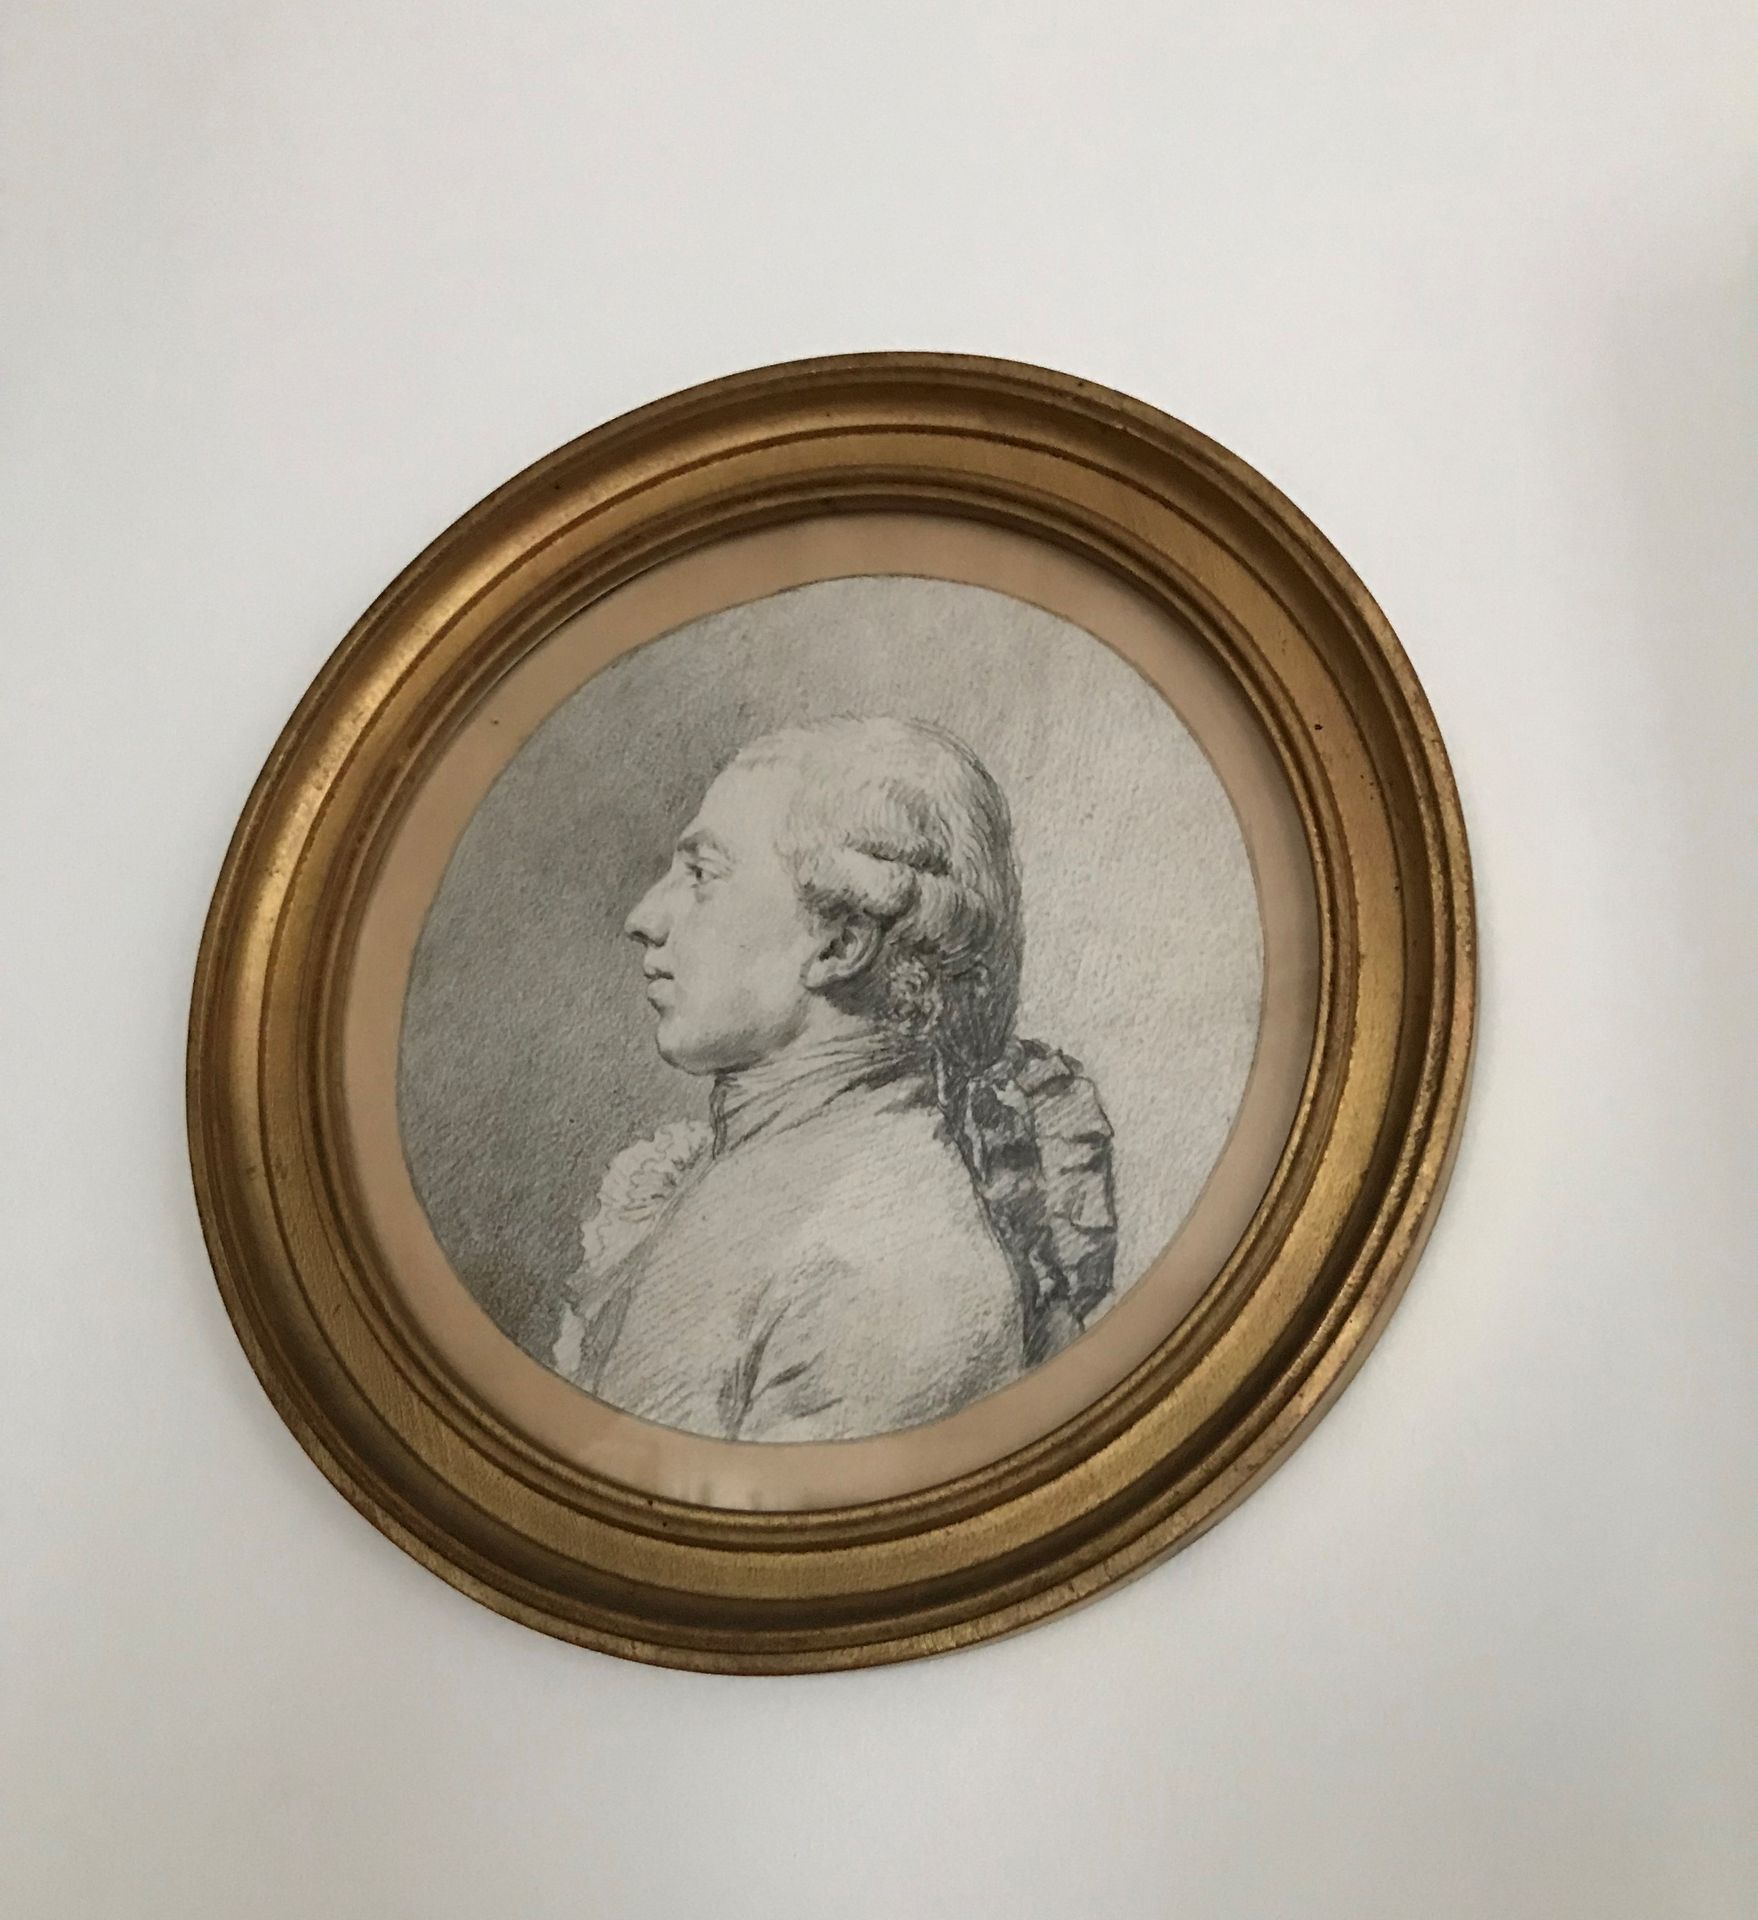 Ecole Française du XVIIIème siècle 
Portrait of a man
Black stone
D. 16 cm.